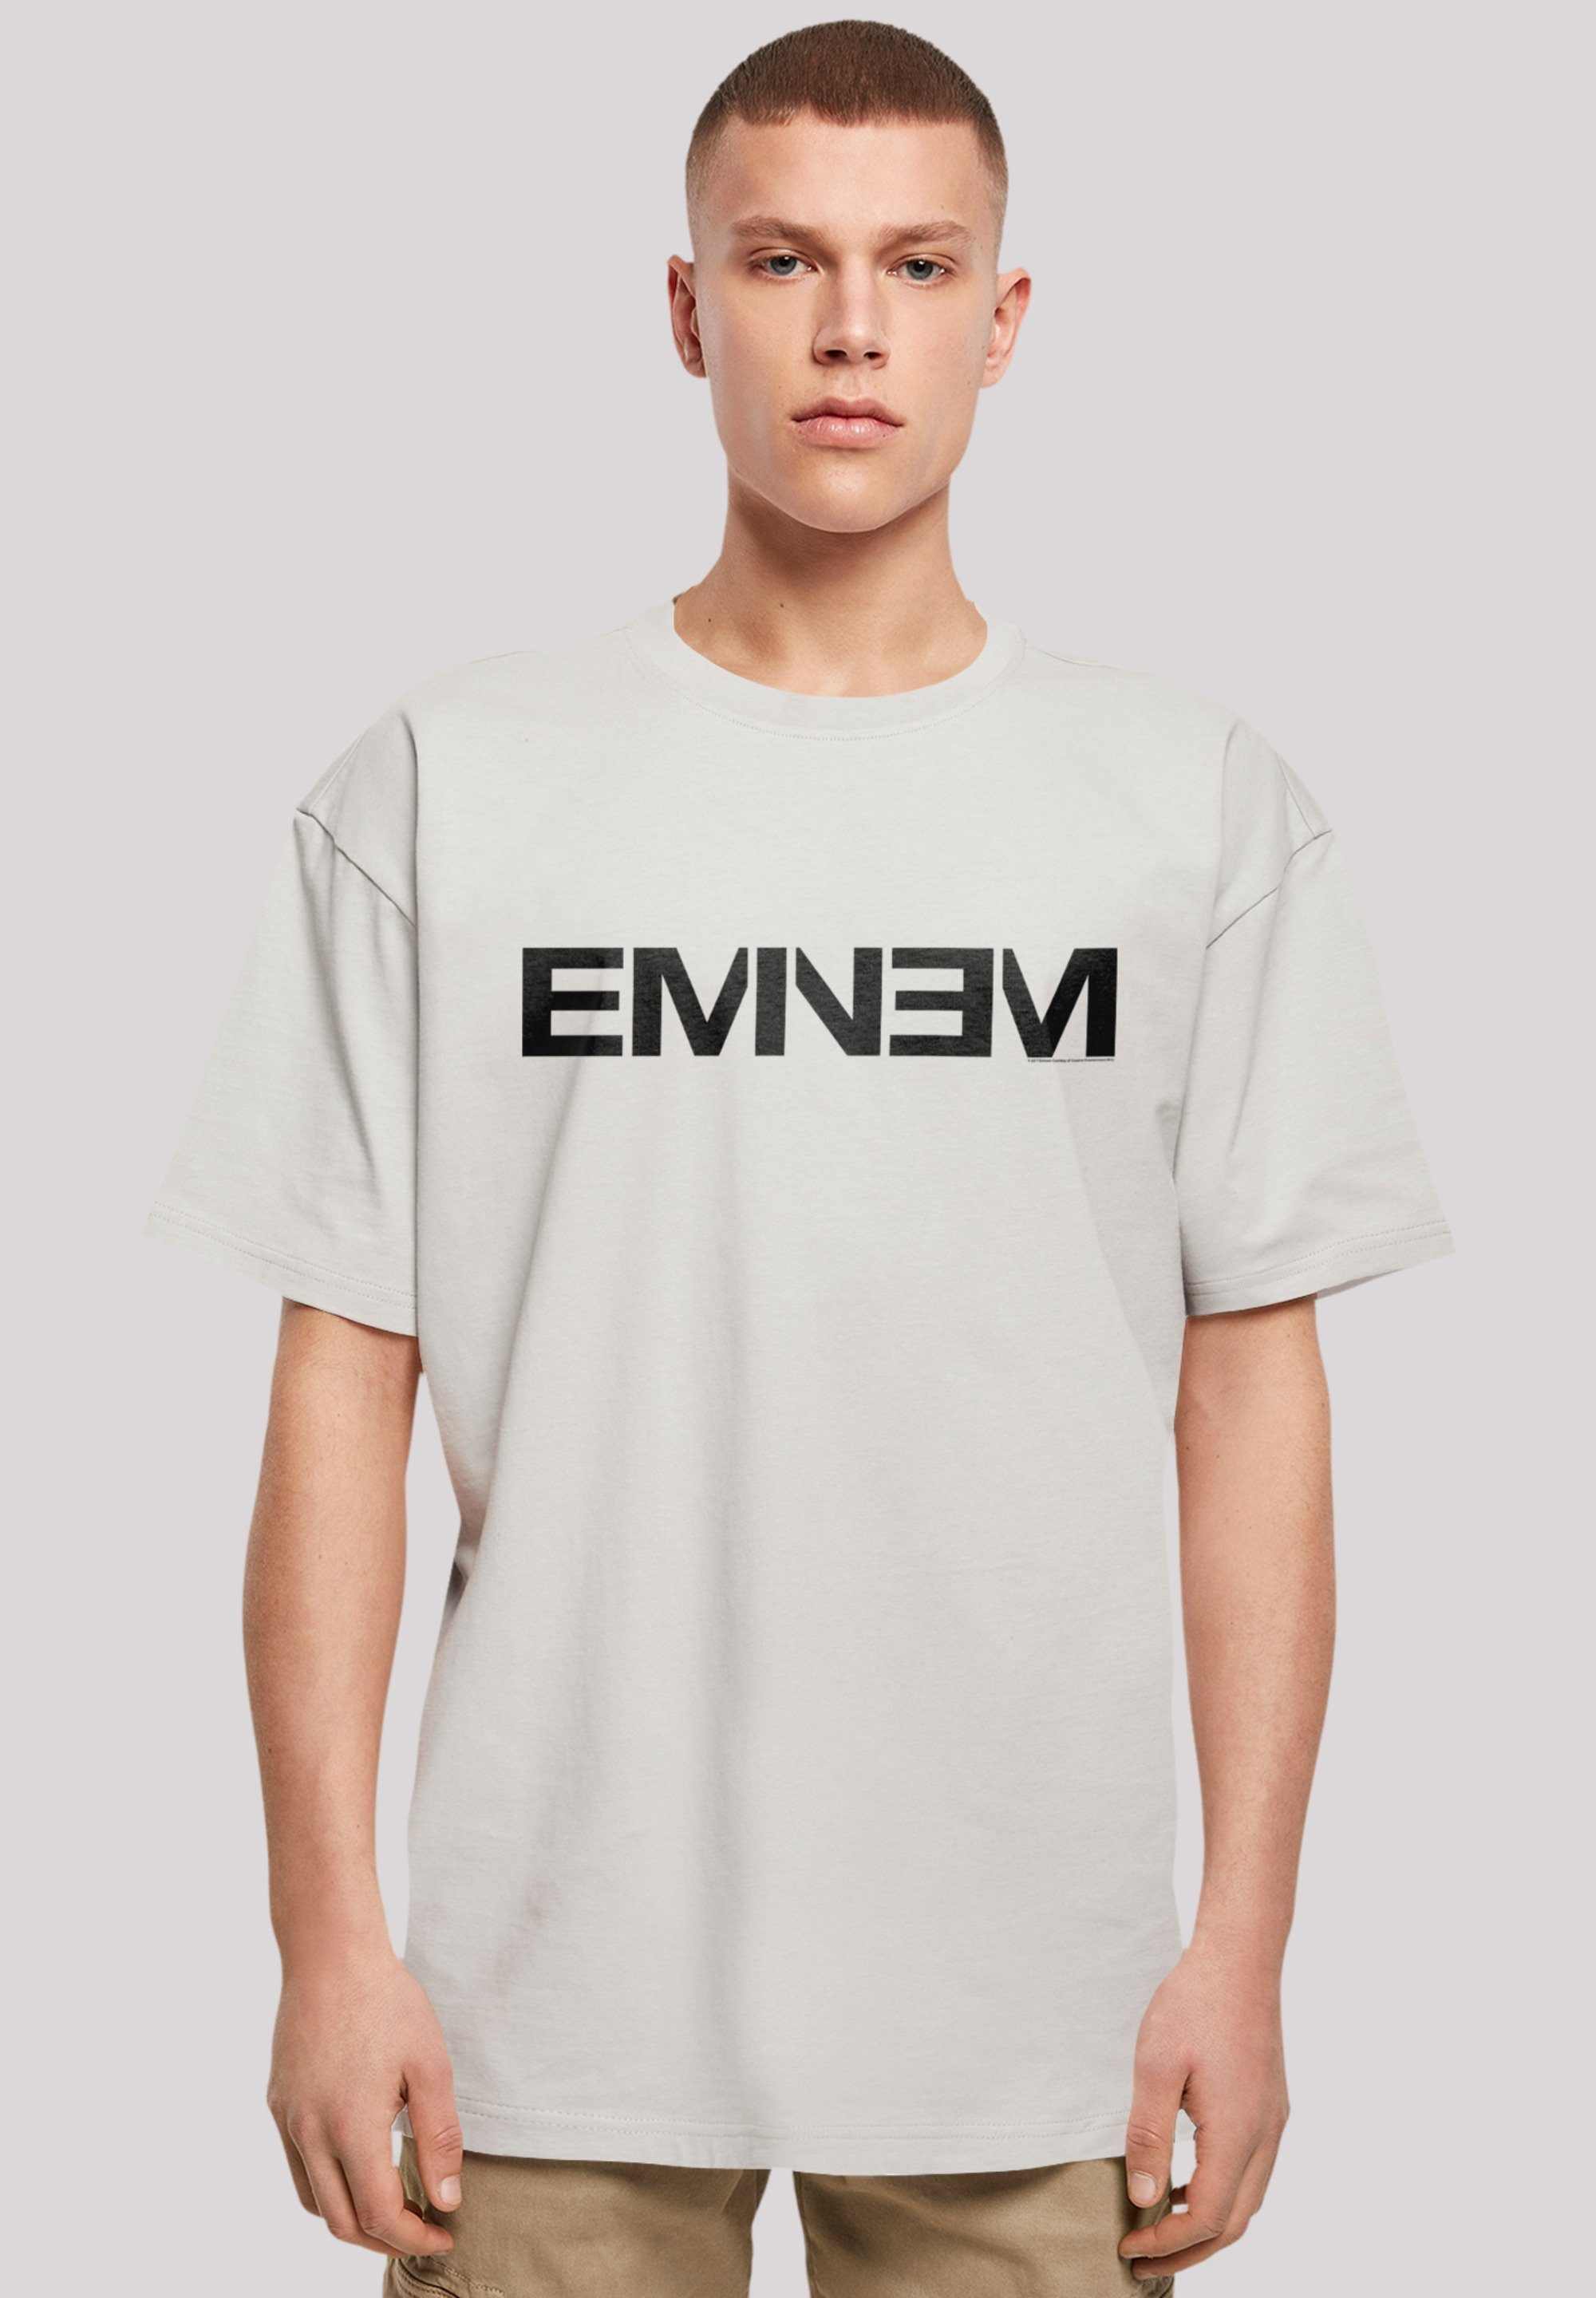 F4NT4STIC T-Shirt Eminem Hip Hop Rap Music Premium Qualität, Musik lightasphalt